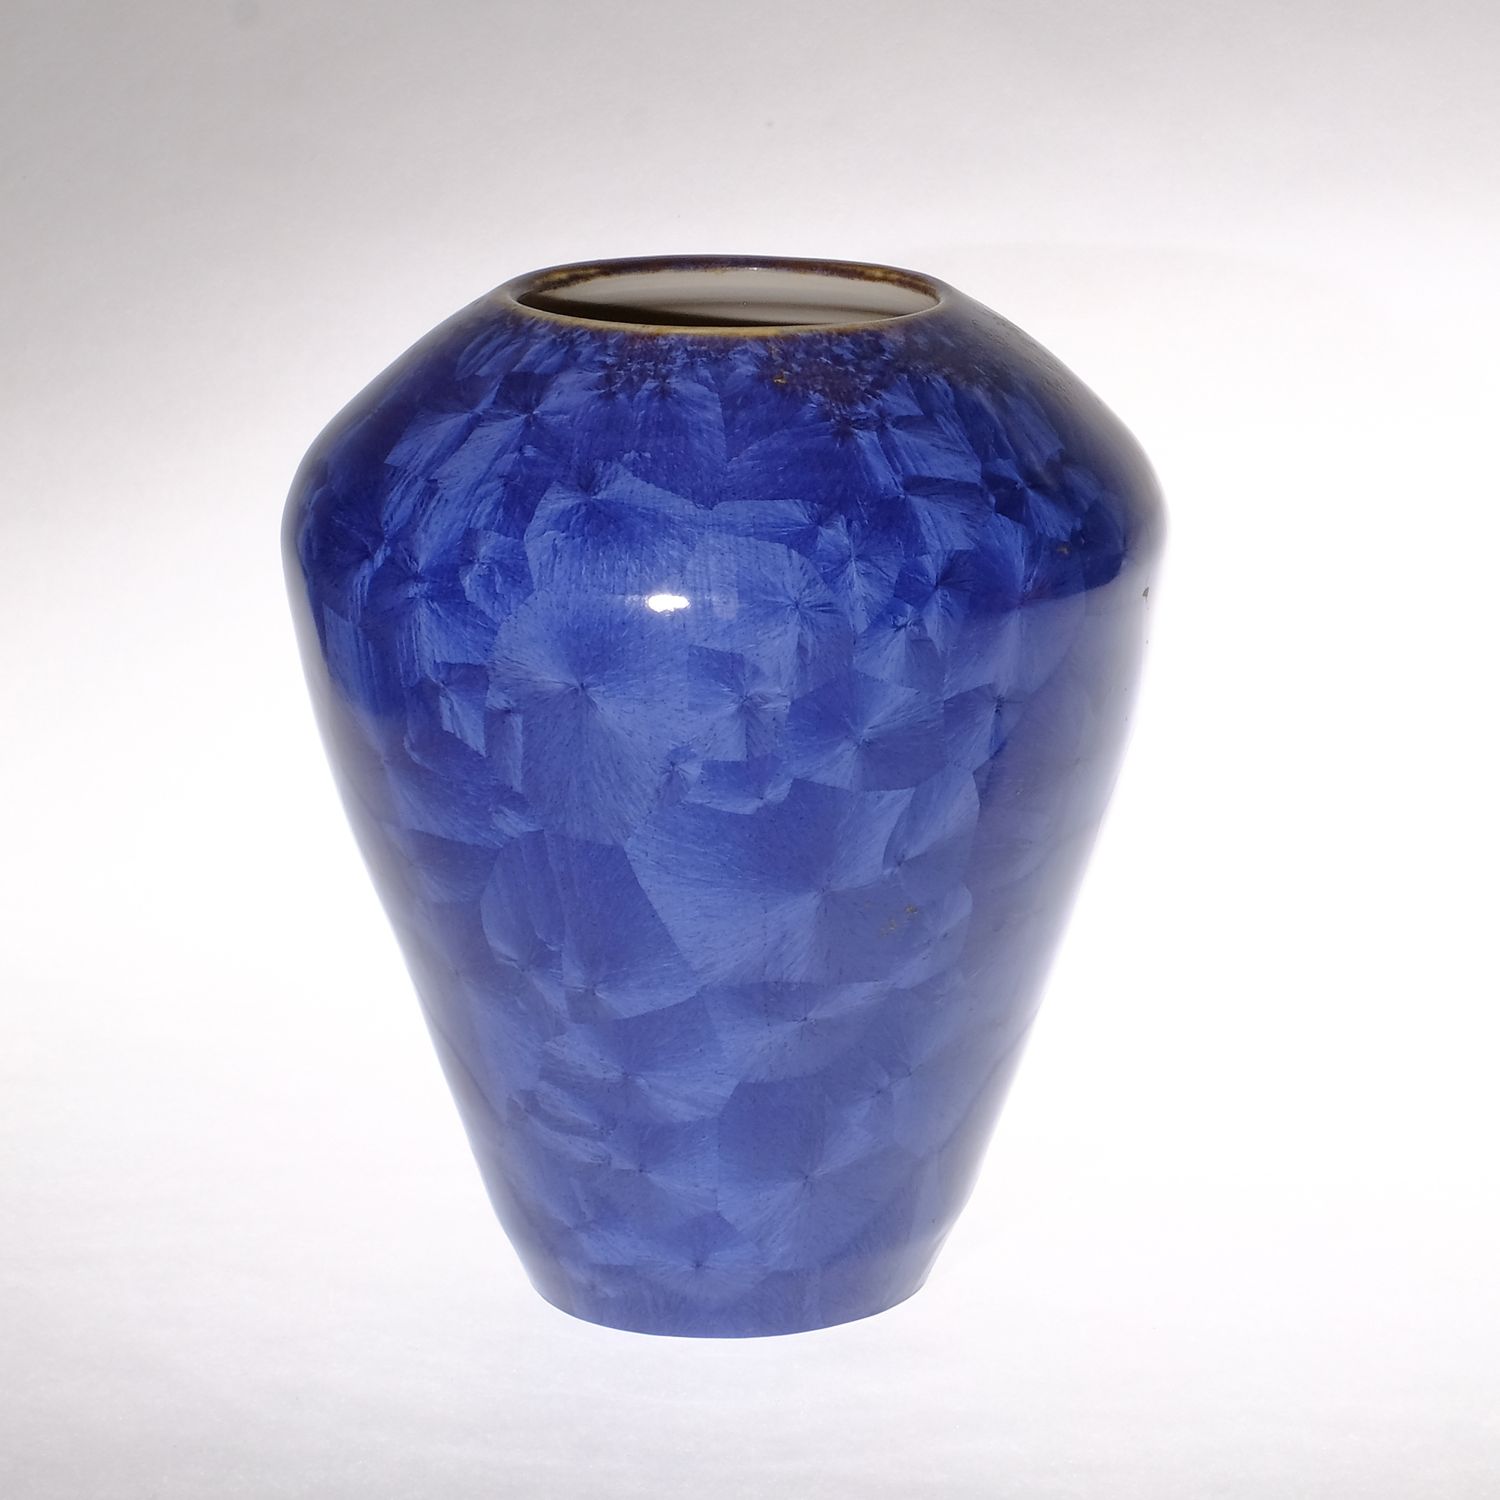 Yumiko Katsuya: Navy Blue Vase Product Image 1 of 1